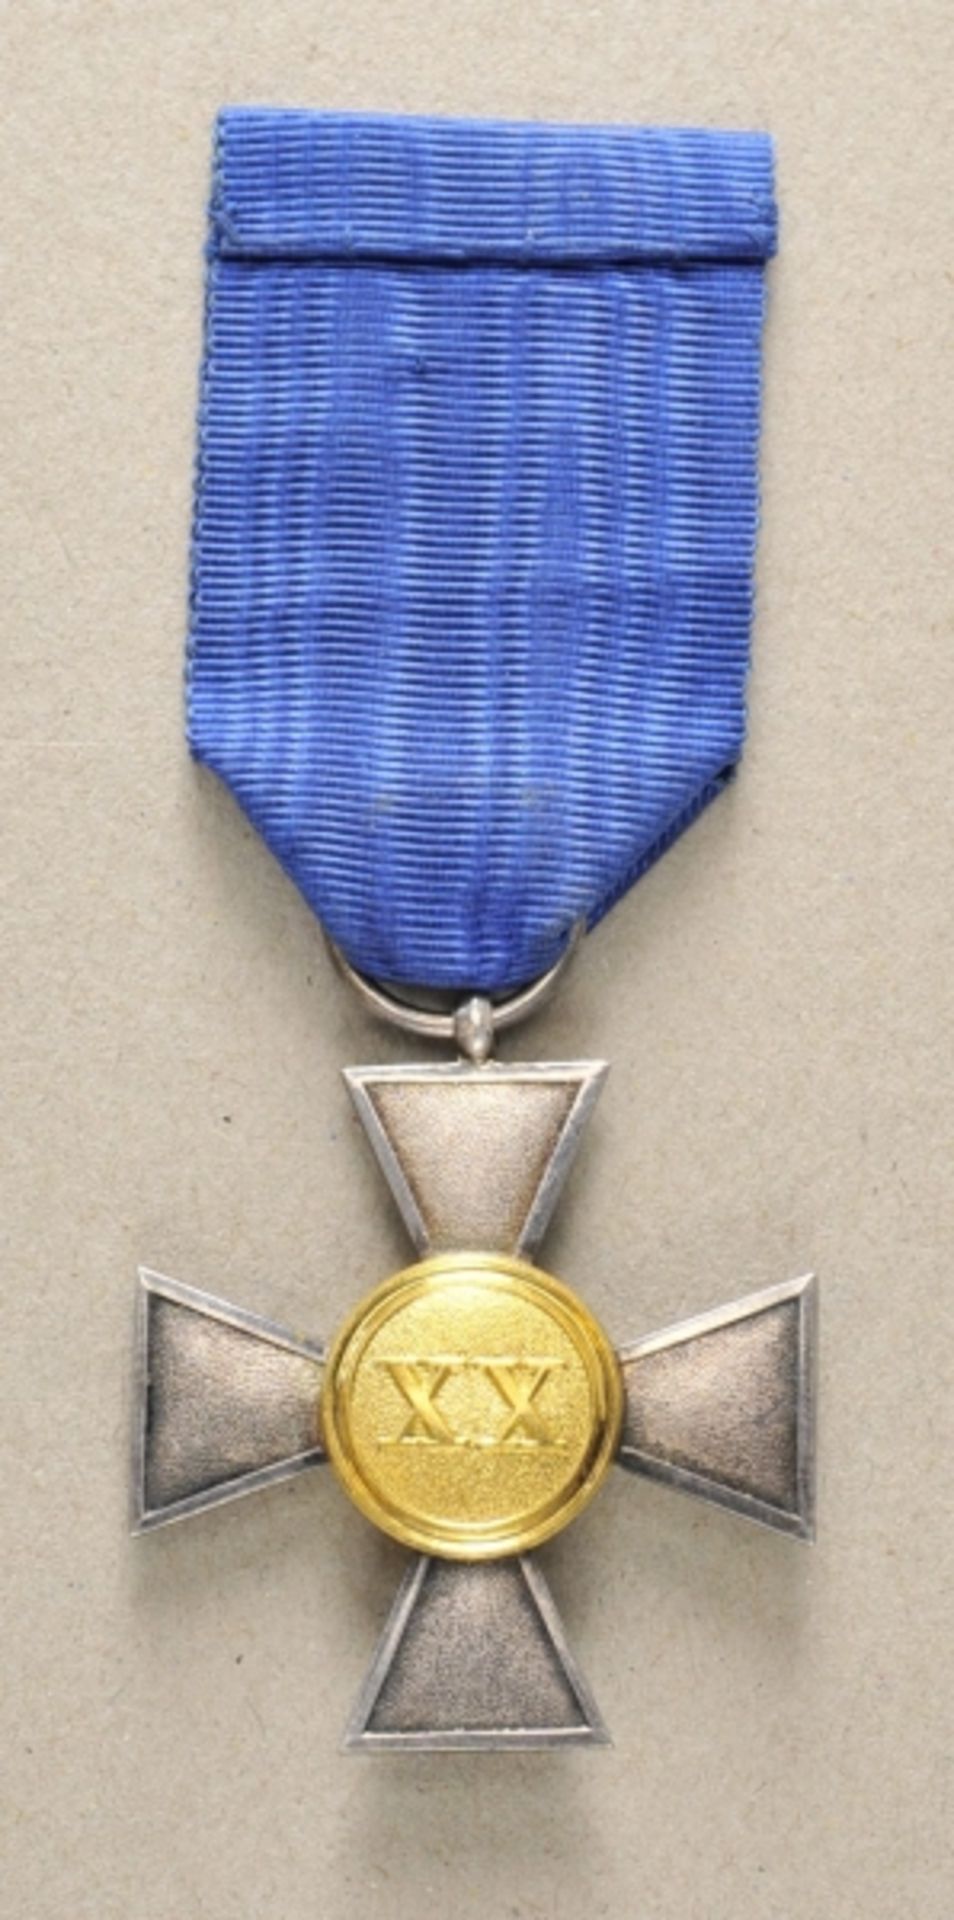 Preussen: Landwehr Dienstauszeichnung für Offiziere für 20 Jahre.Korpus Silber, Medaillons in Gold - Bild 2 aus 2